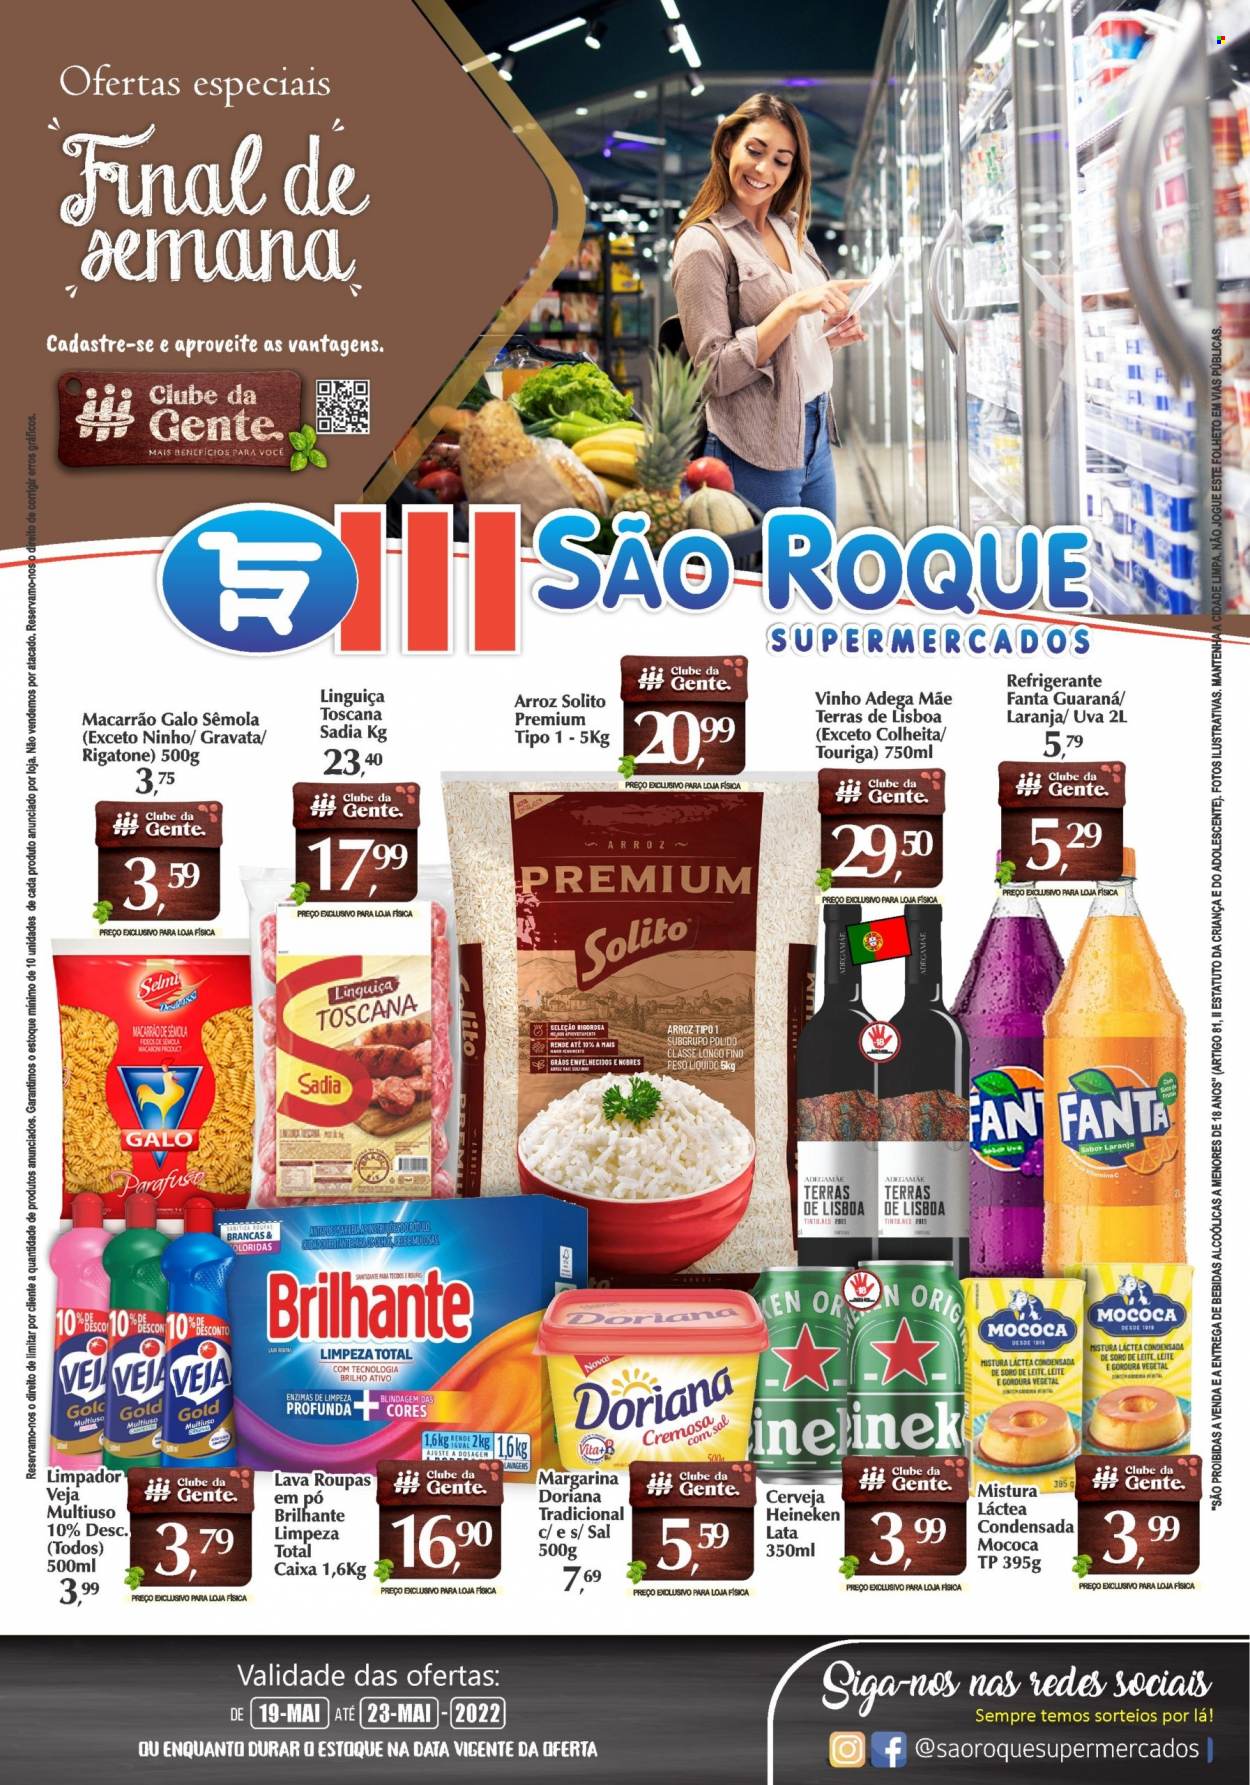 Encarte São Roque Supermercados  - 19.05.2022 - 23.05.2022.